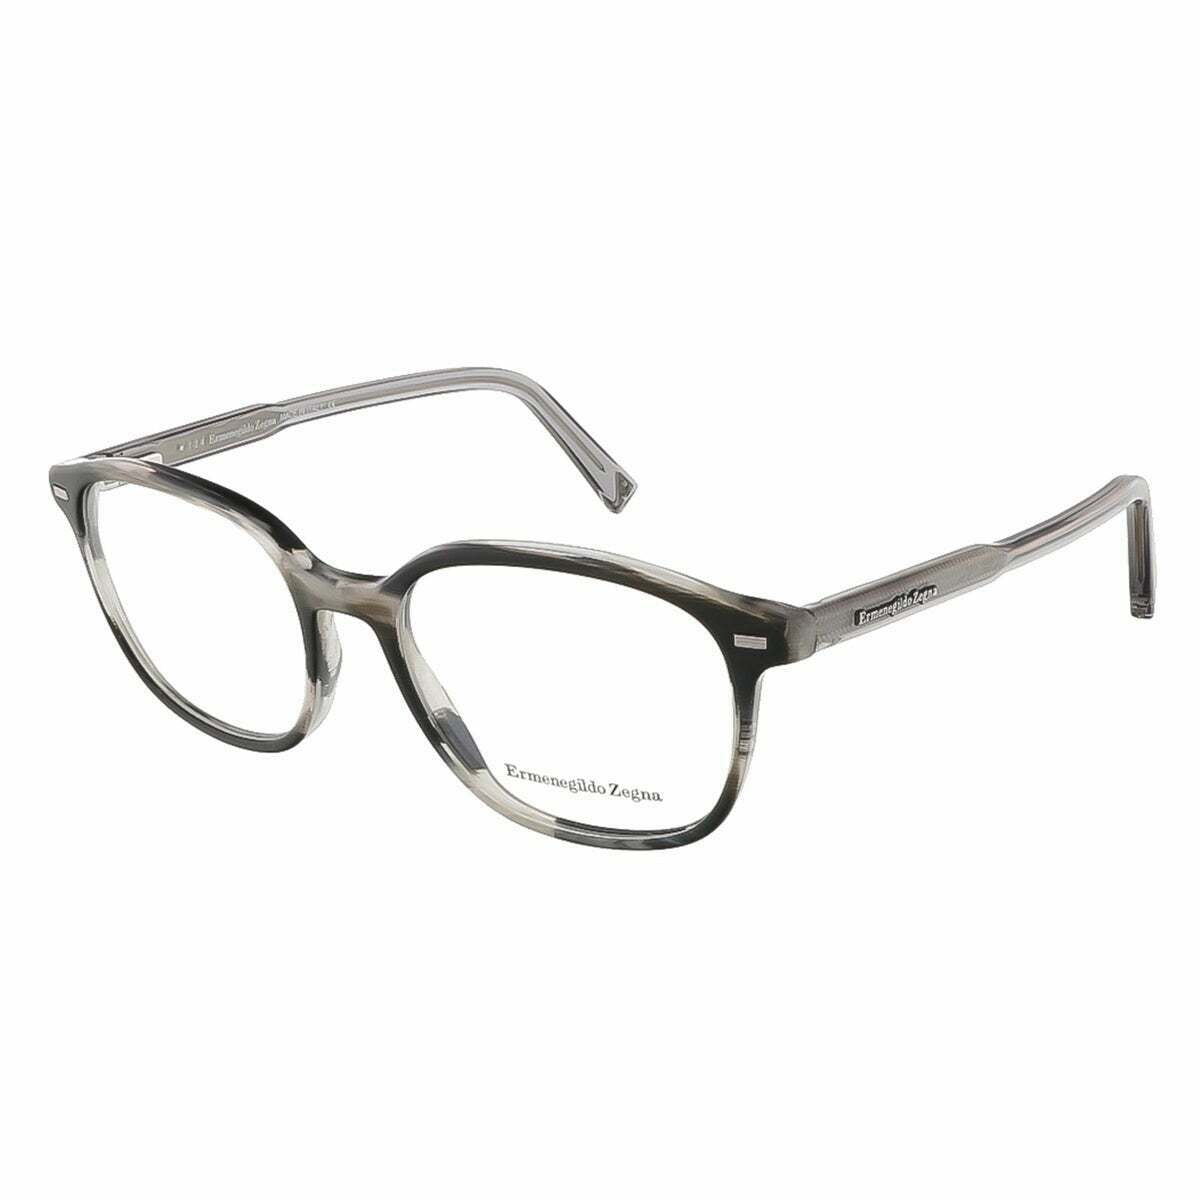 Ermenegildo Zegna Eyewear Frame Gray Men EZ5007 064 - Walmart.com